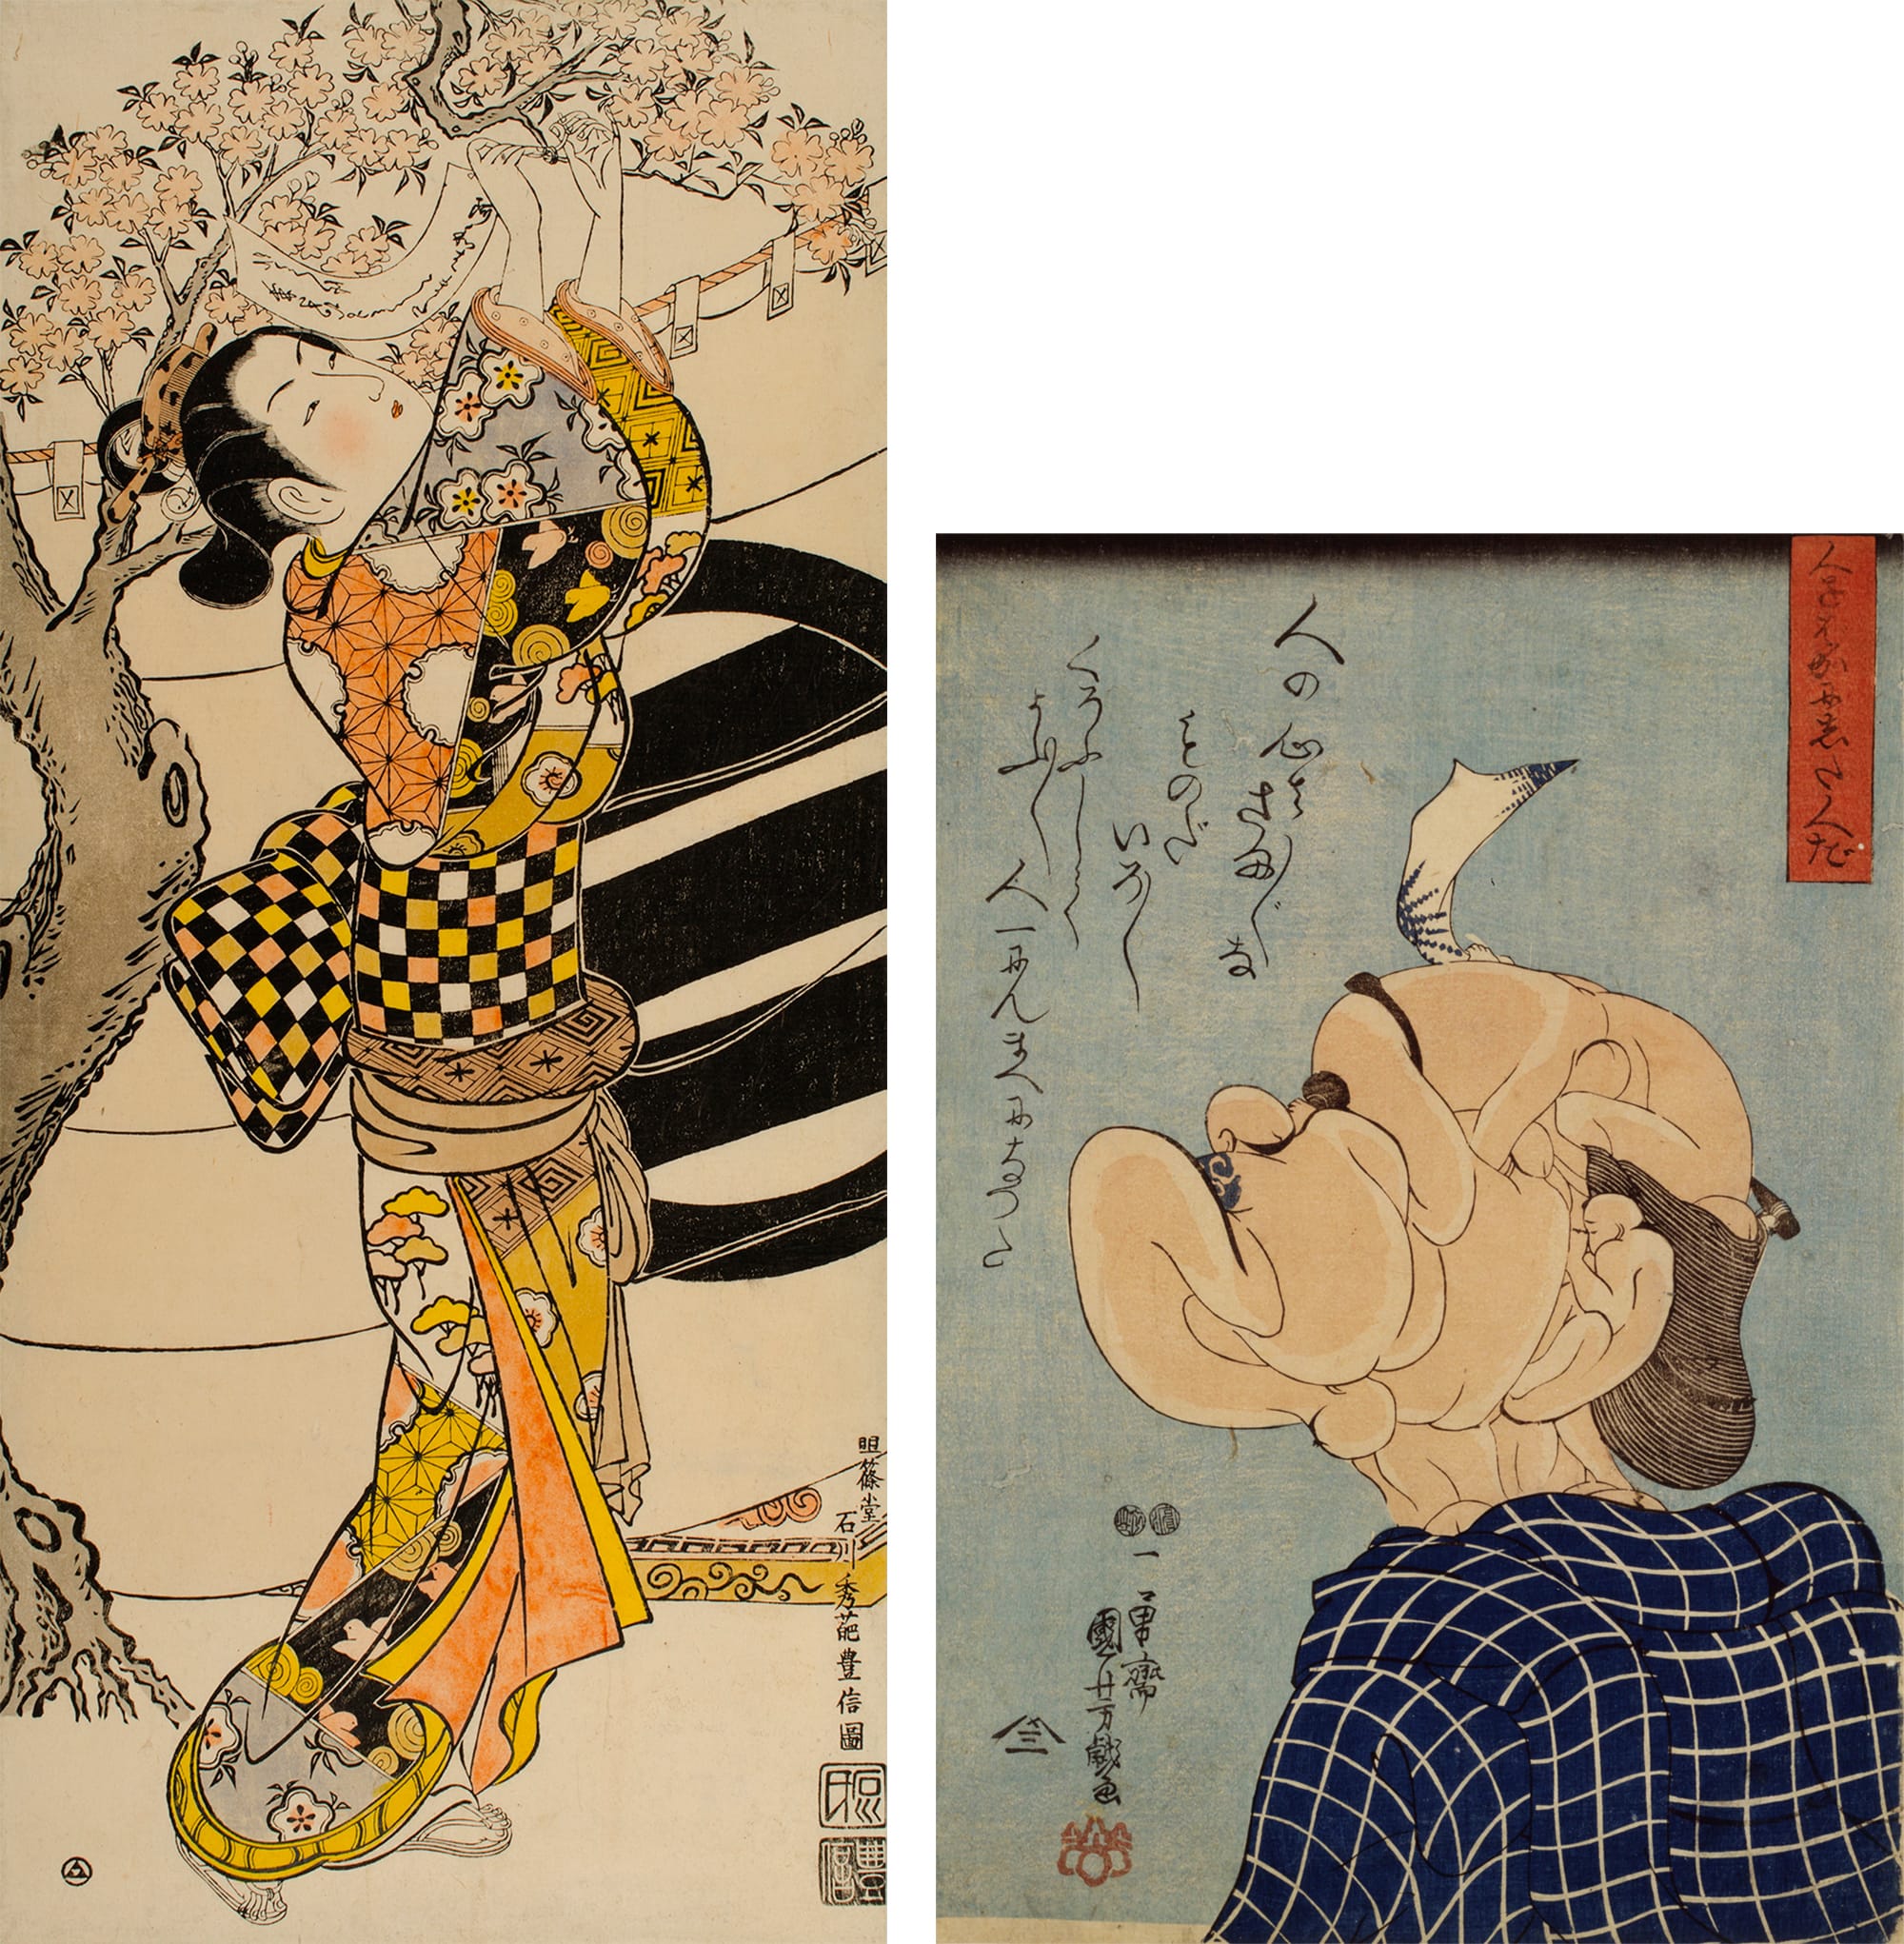 左图:重要文化财产 石川丰信的“花下美人” 大大判 红绘（浮世绘的彩色技法） 延享期 (1744-48) 平木浮世绘财团 《美人画》浮世绘的主流，也是当时的时尚潮流的沟通媒介。 右图:歌川国芳“那些愚弄人的人” 大判 锦绘 弘化4年(1847)左右 日本浮世绘博物馆